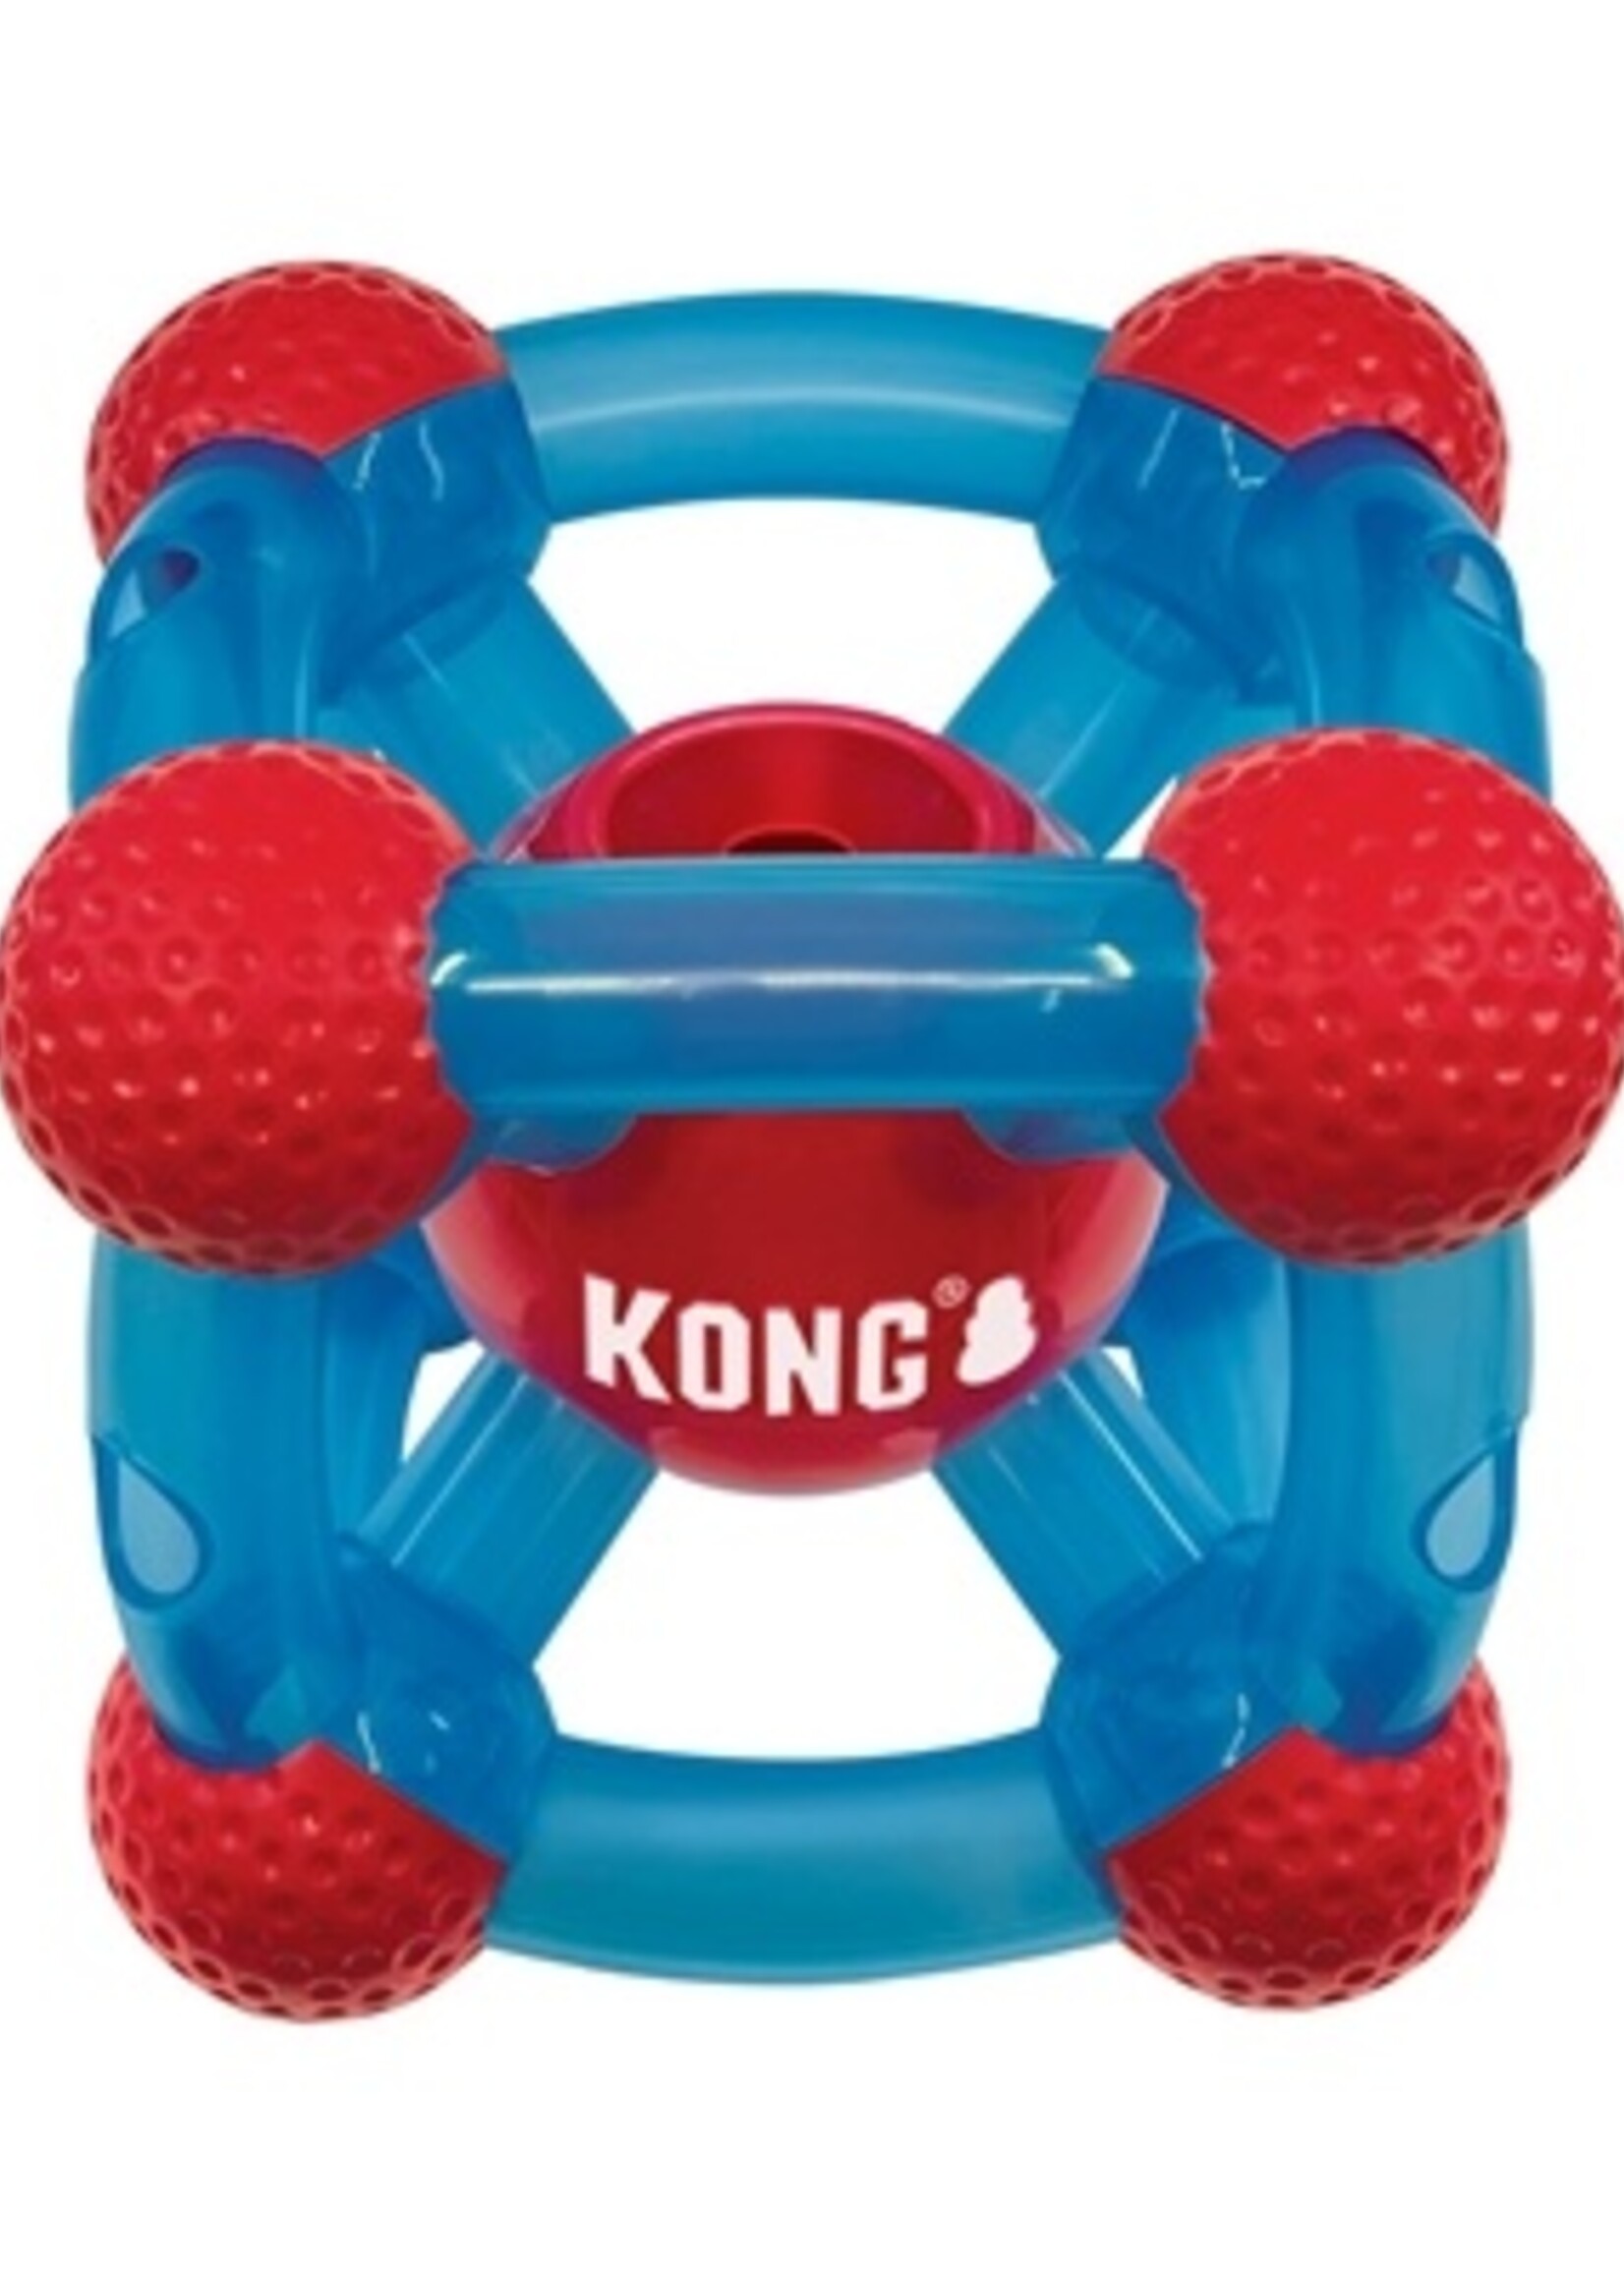 Kong Kong rewards tinker